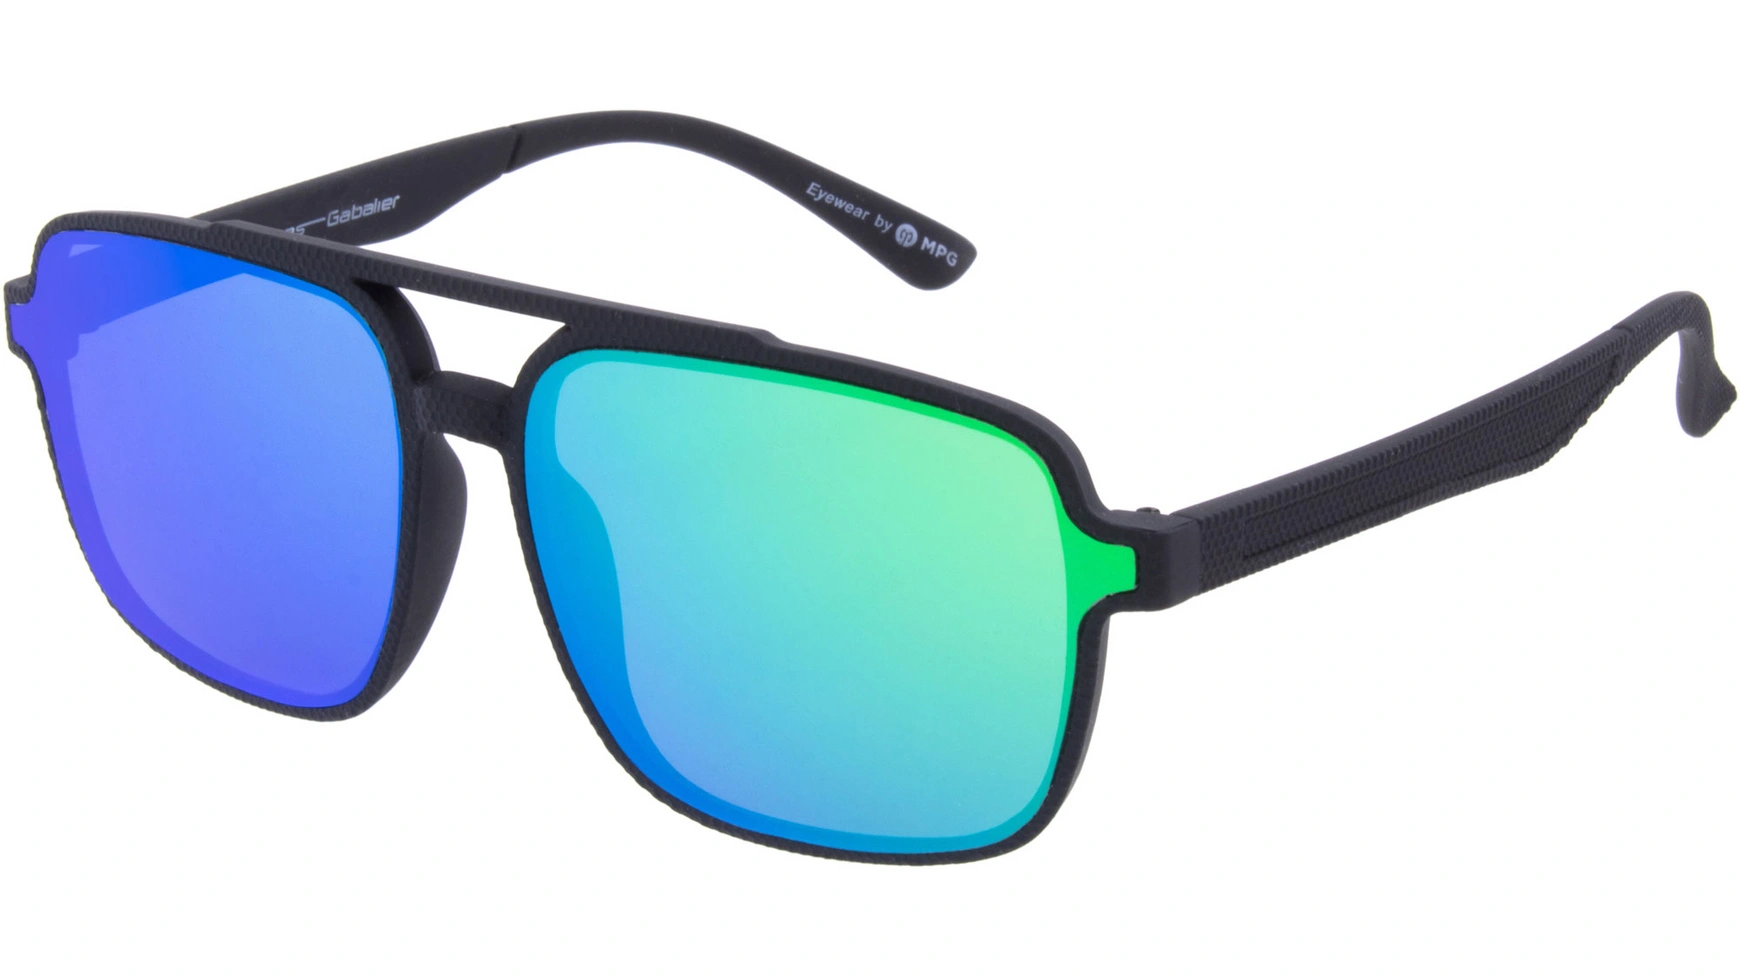 Солнцезащитные очки Andreas Gabalier AGS105 пластик солнцезащитные очки gg0926s 005 черные зеленые поляризованные gucci черный